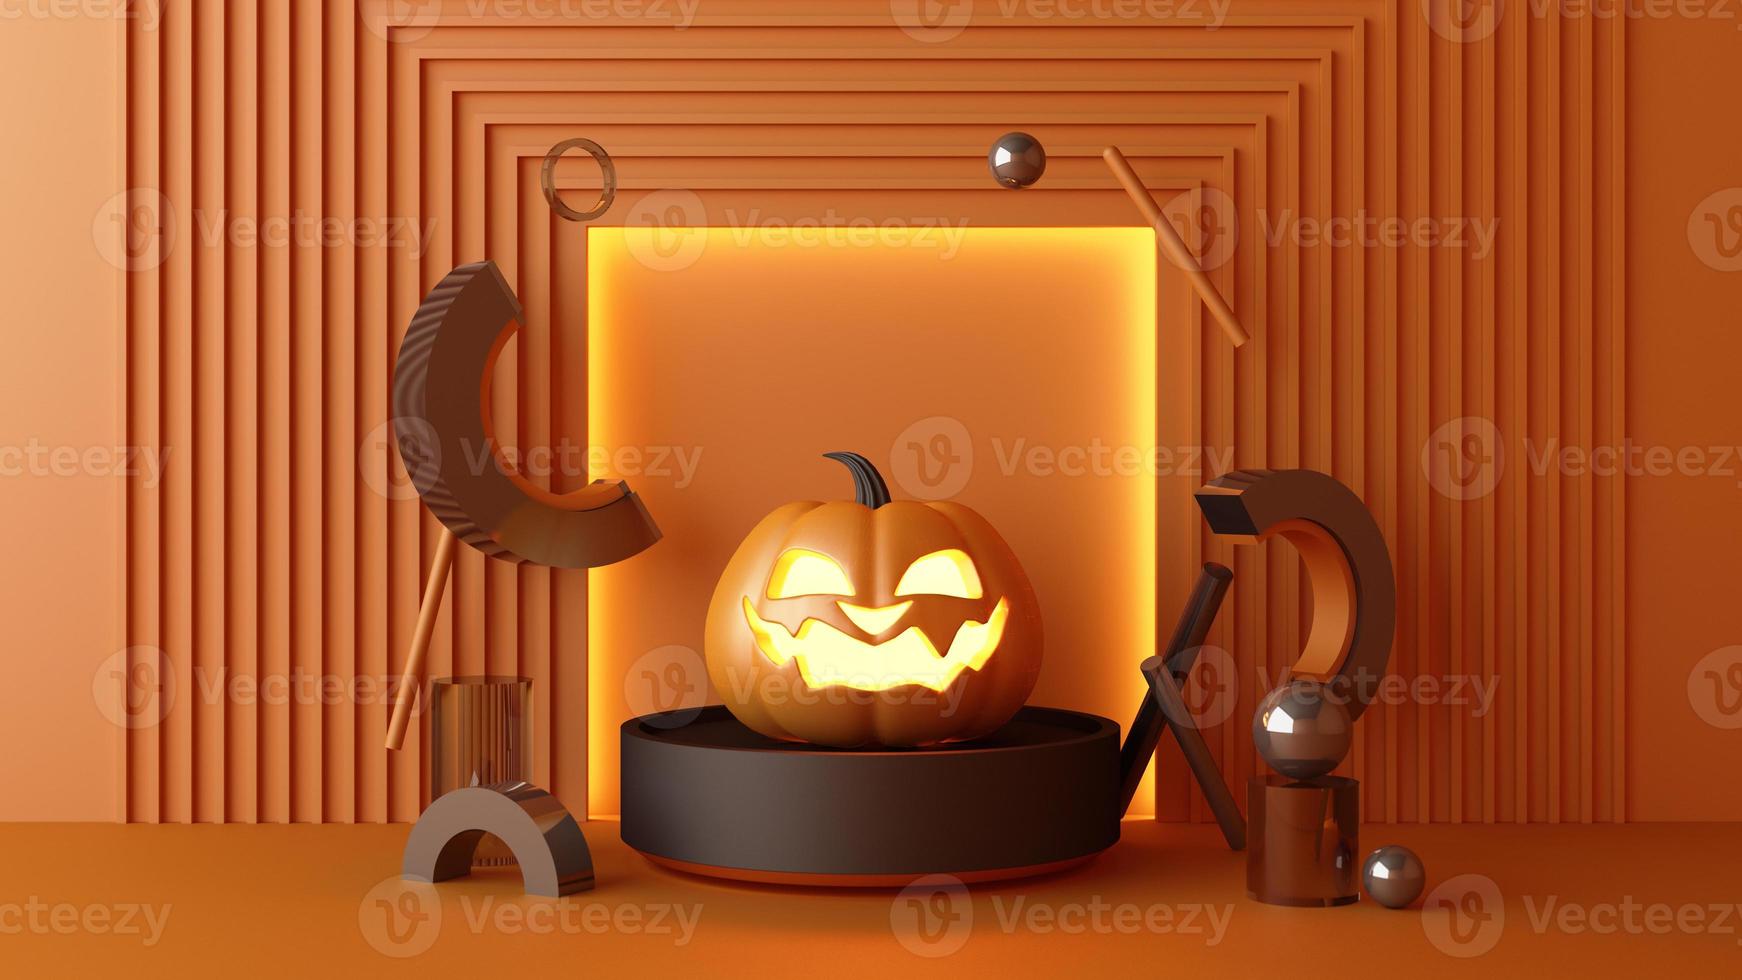 oktober halloween pumpor huvud som växer med geometrisk form med produktställ mock up för present på färgbakgrund 3d-rendering foto